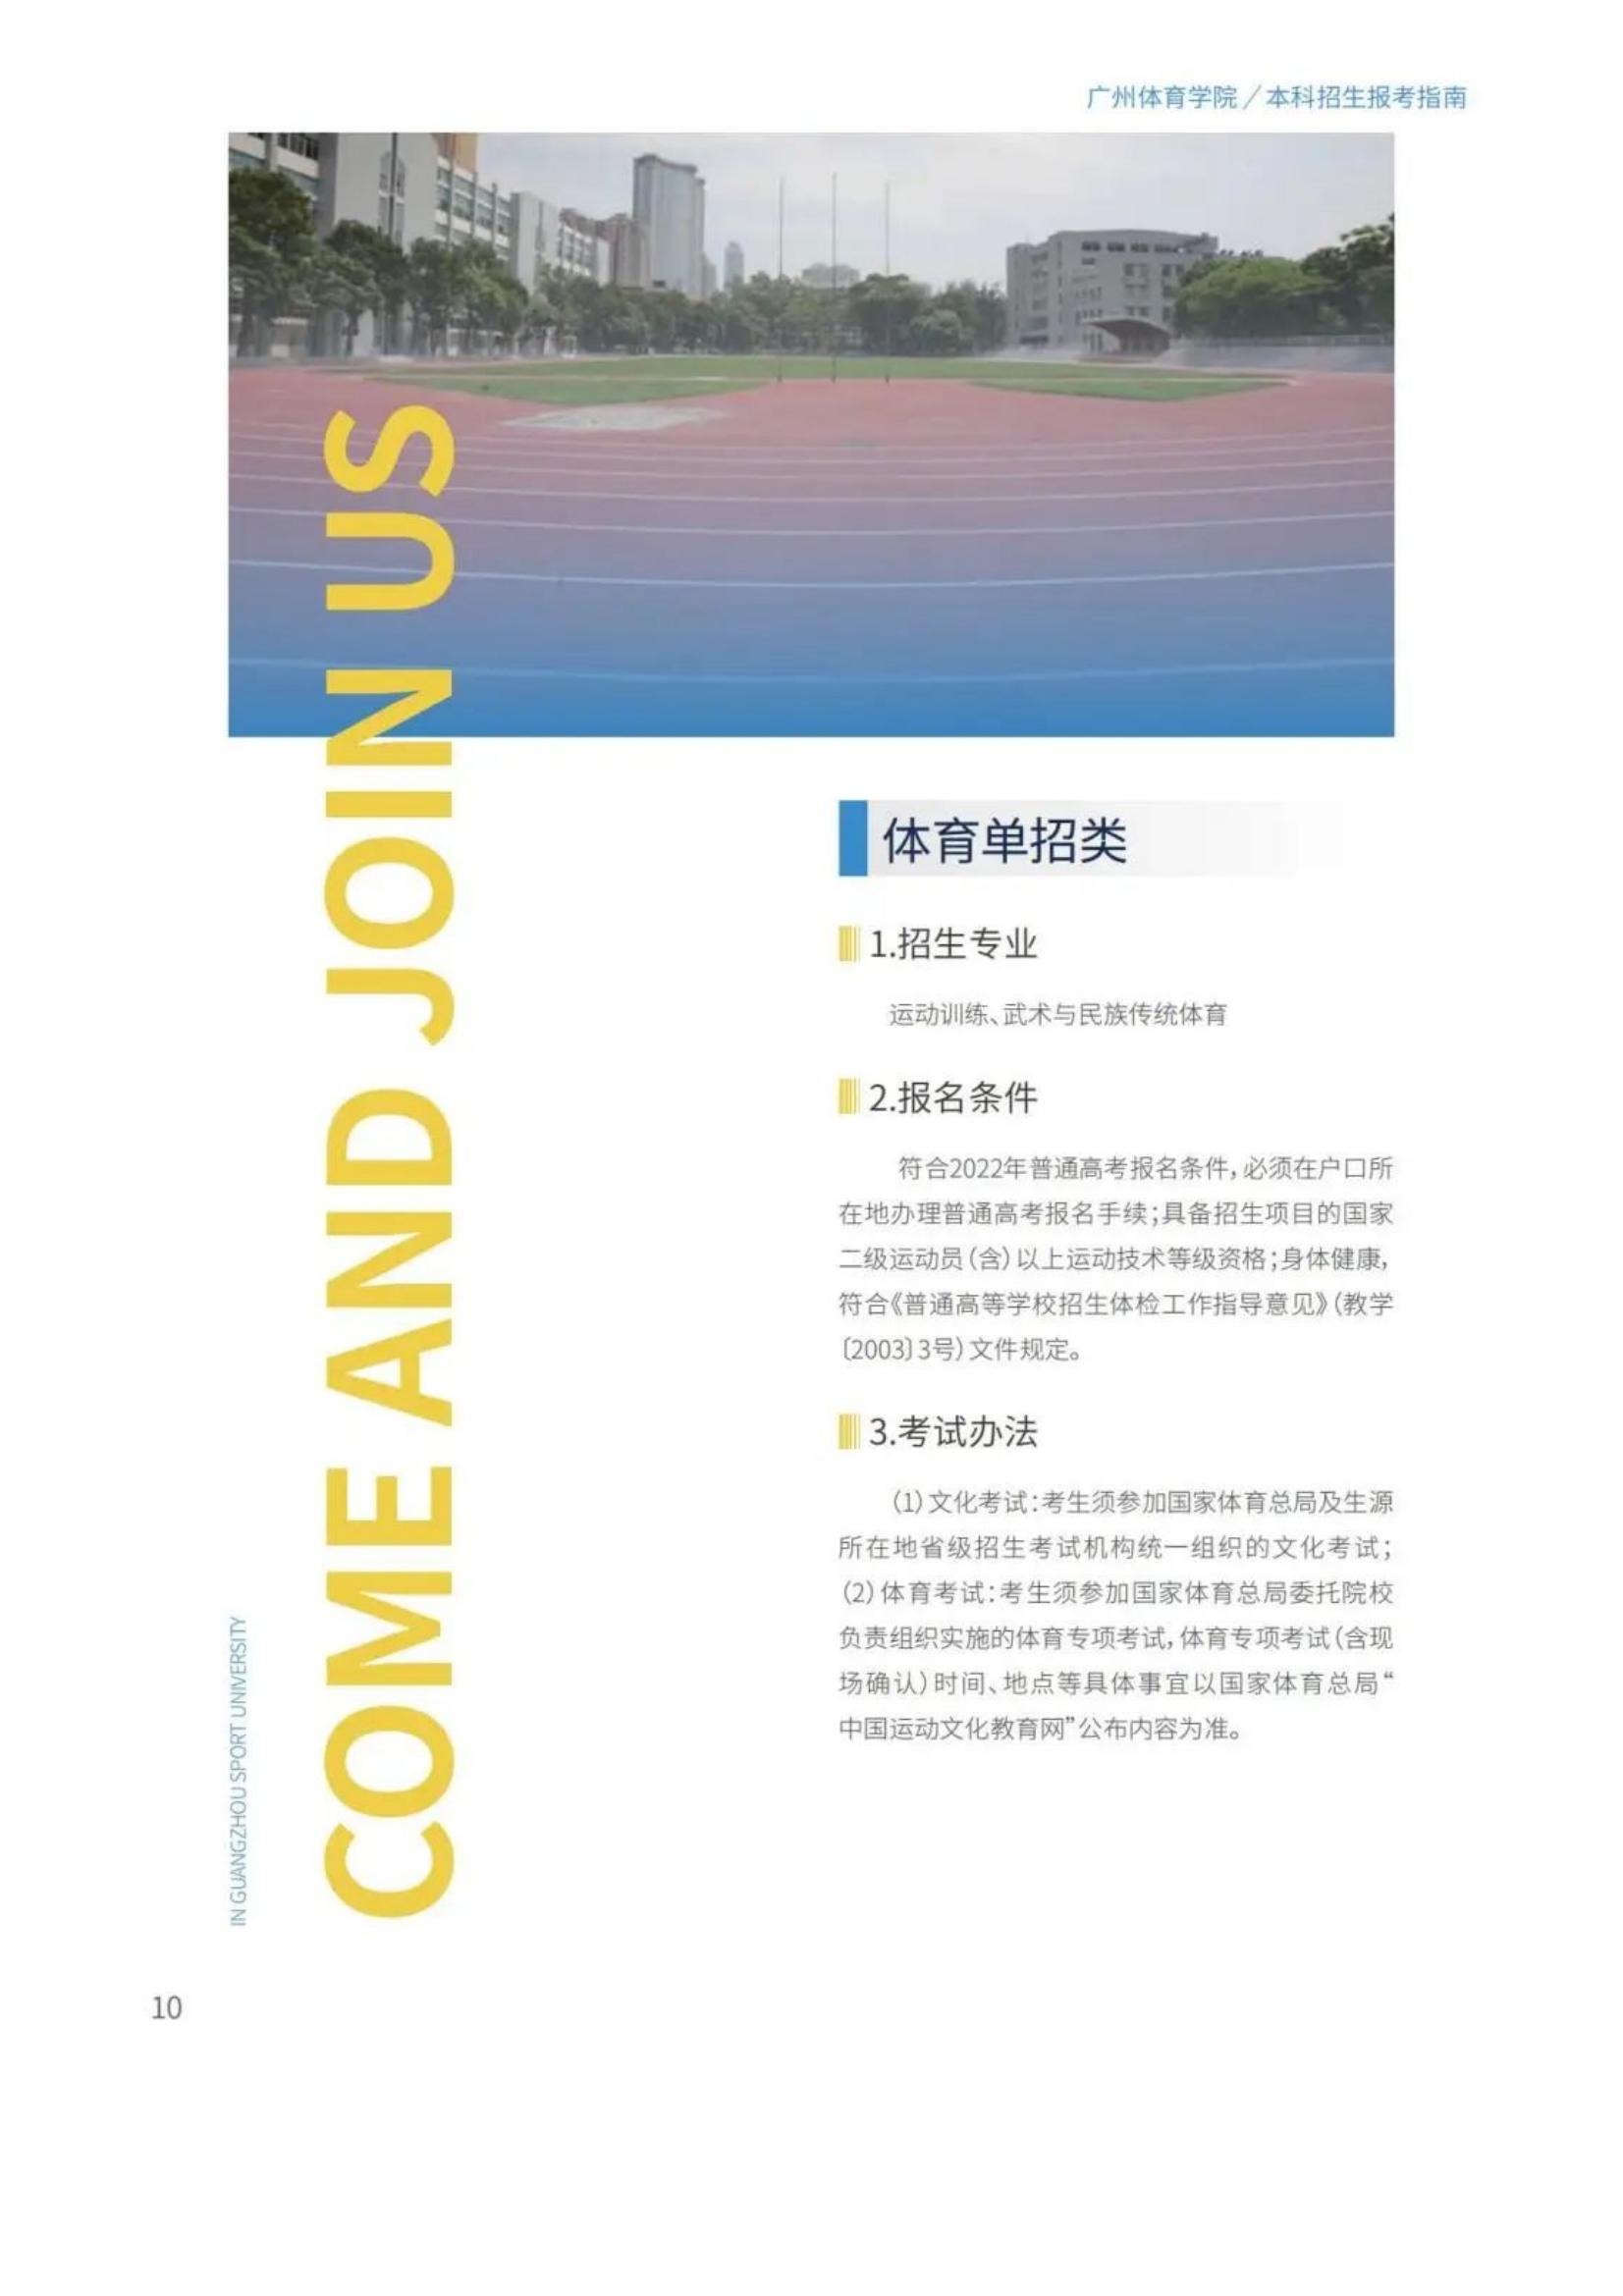 广州体育学院2022年报考指南发布_12.jpg